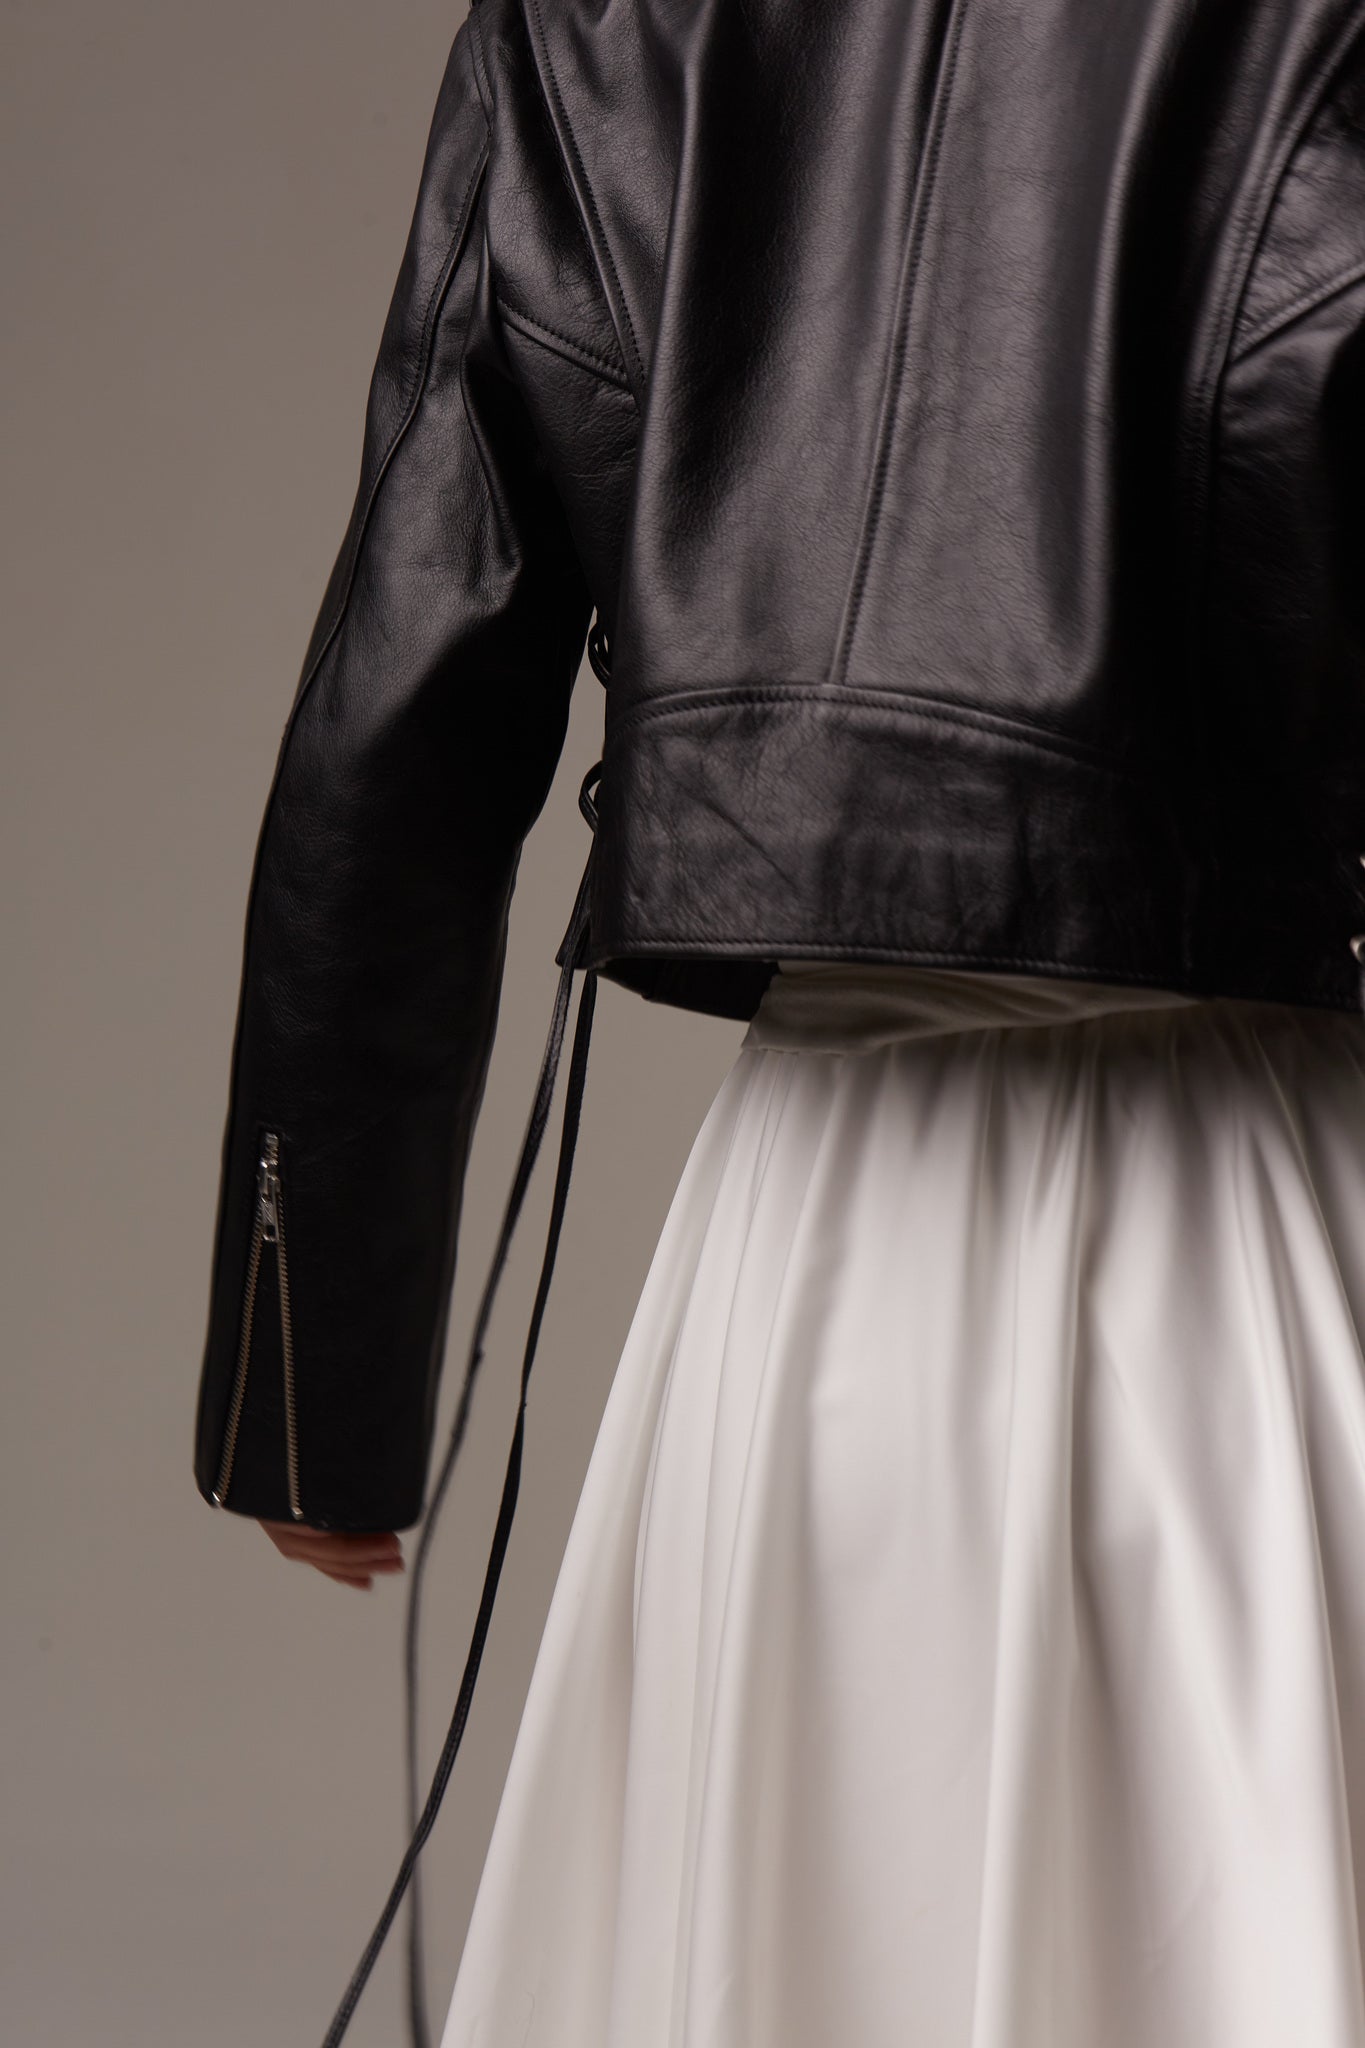 Black Leather Jacket with Laces. Geaca din piele naturala cu sireturi